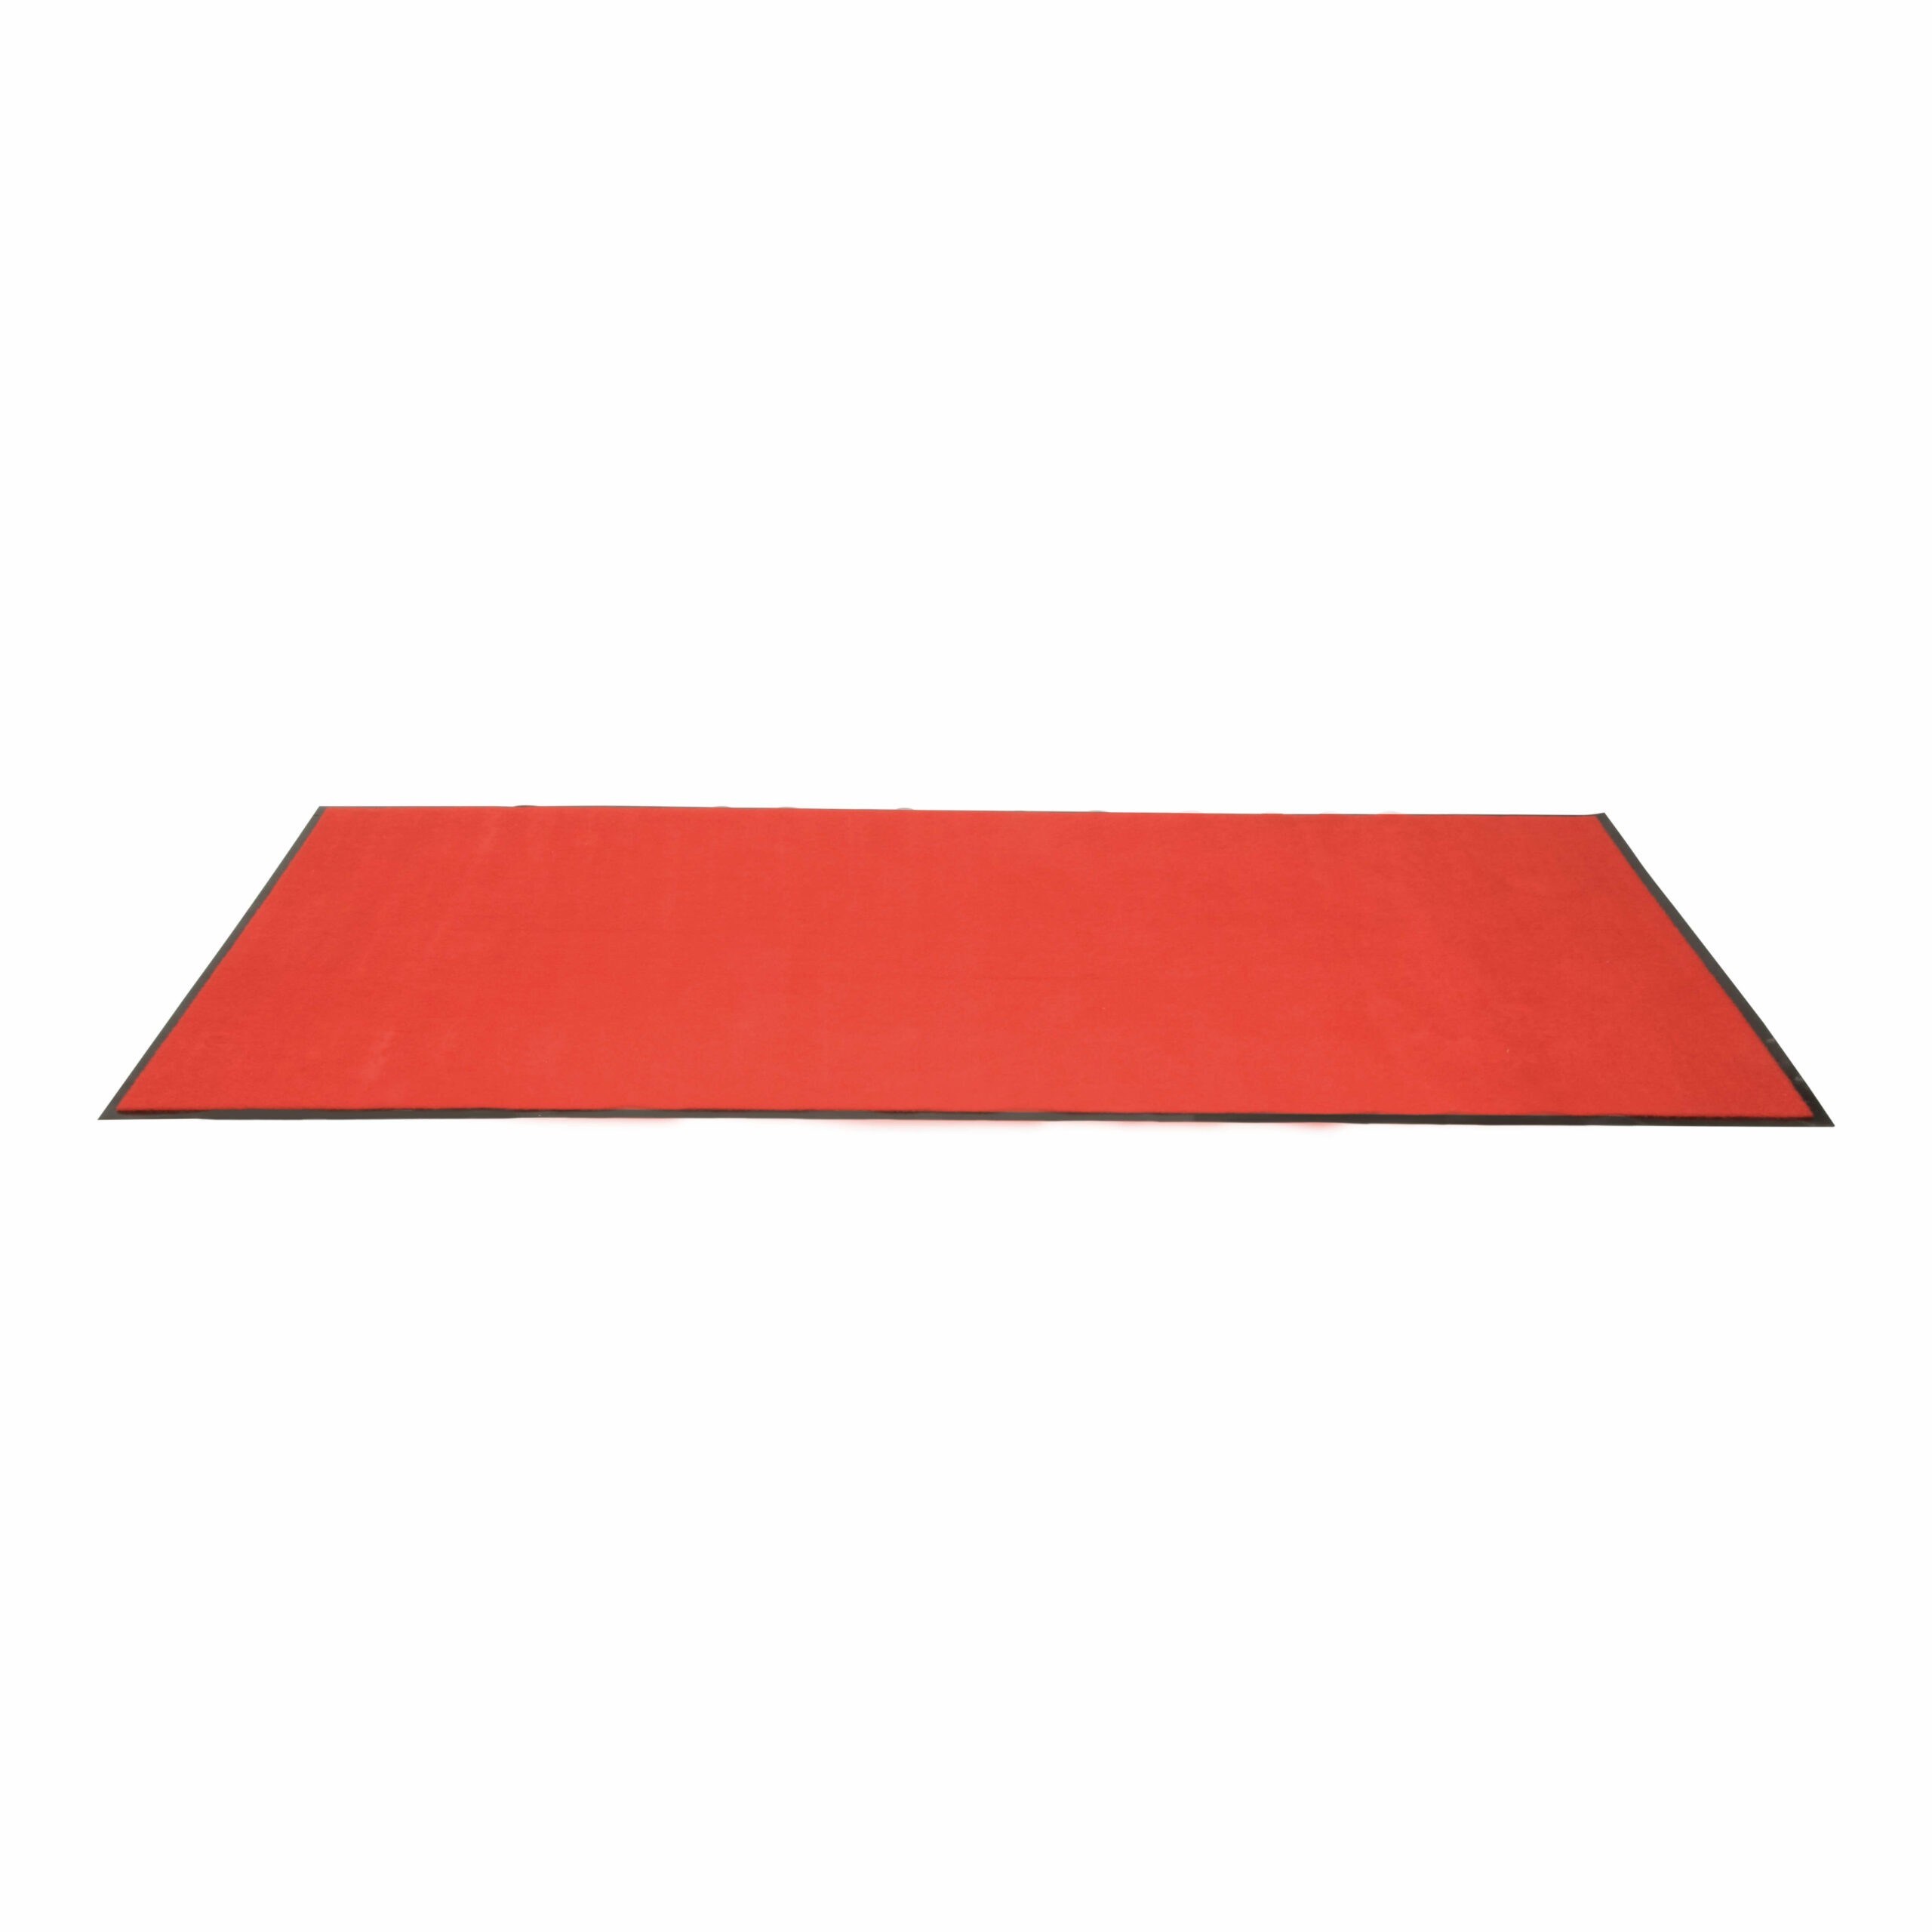 Raudonos spalvos kilimai renginiams 200x90cm